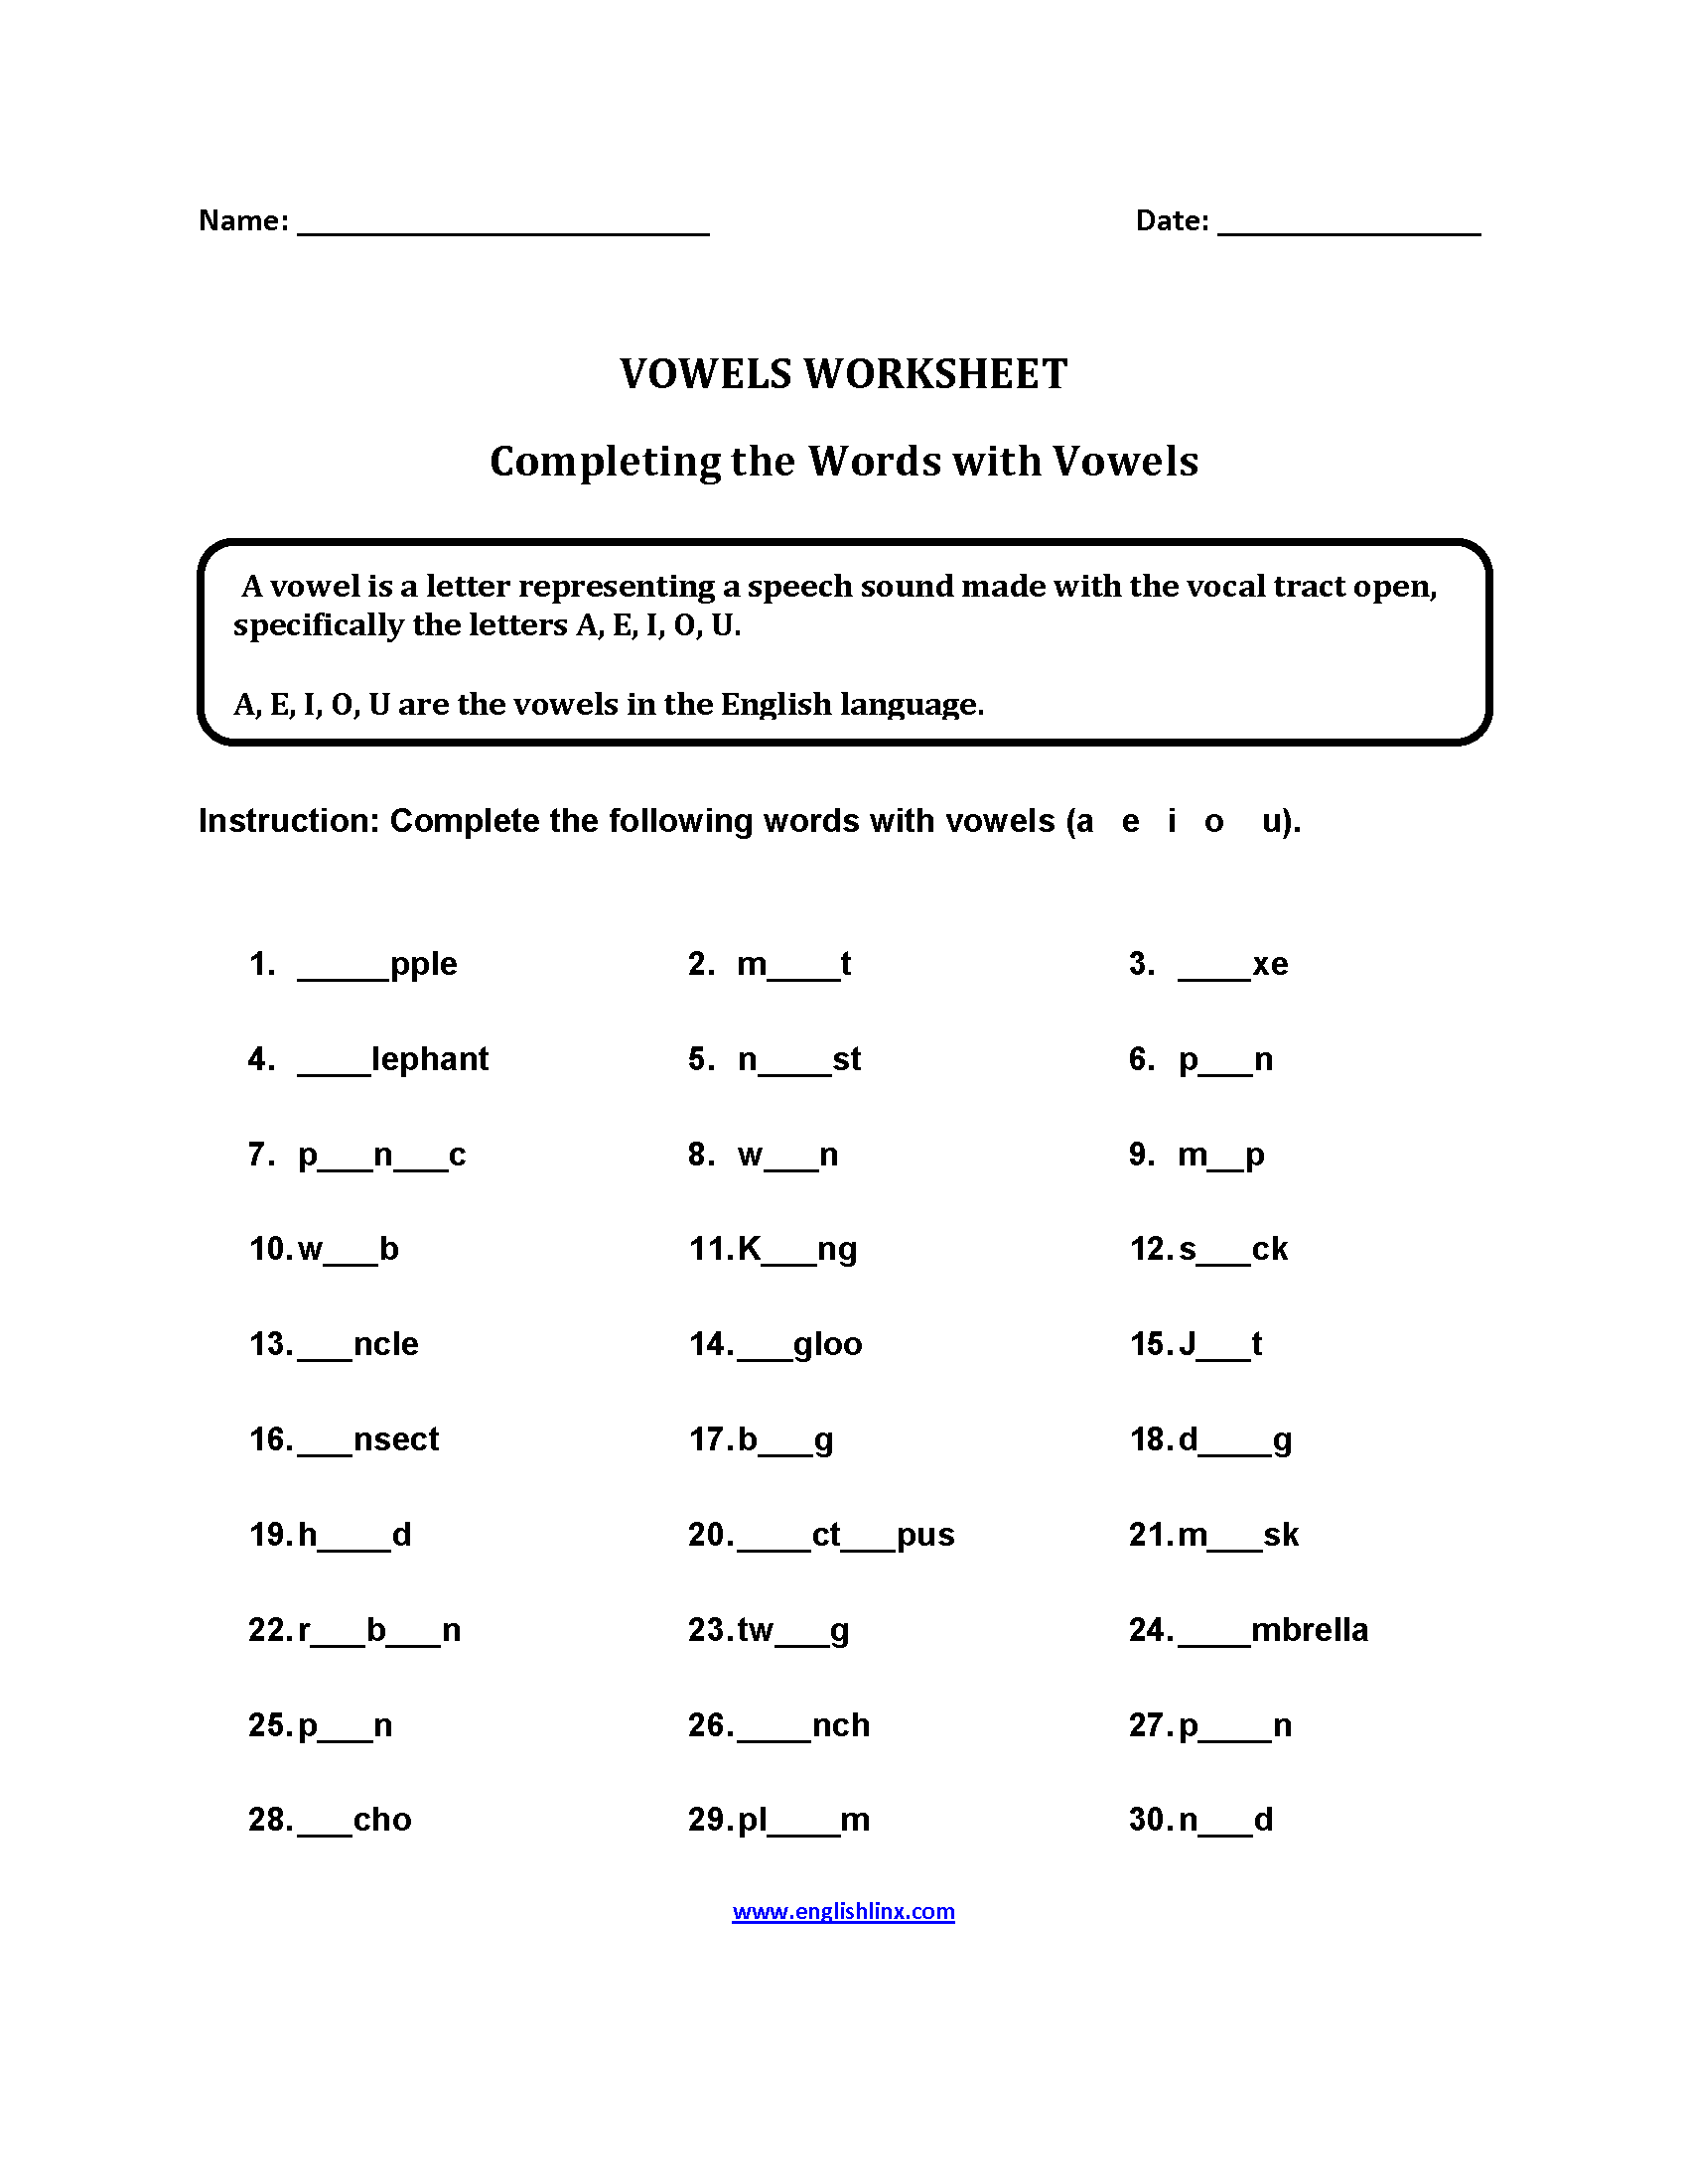 vowels-worksheets-completing-words-vowels-worksheets-part-2